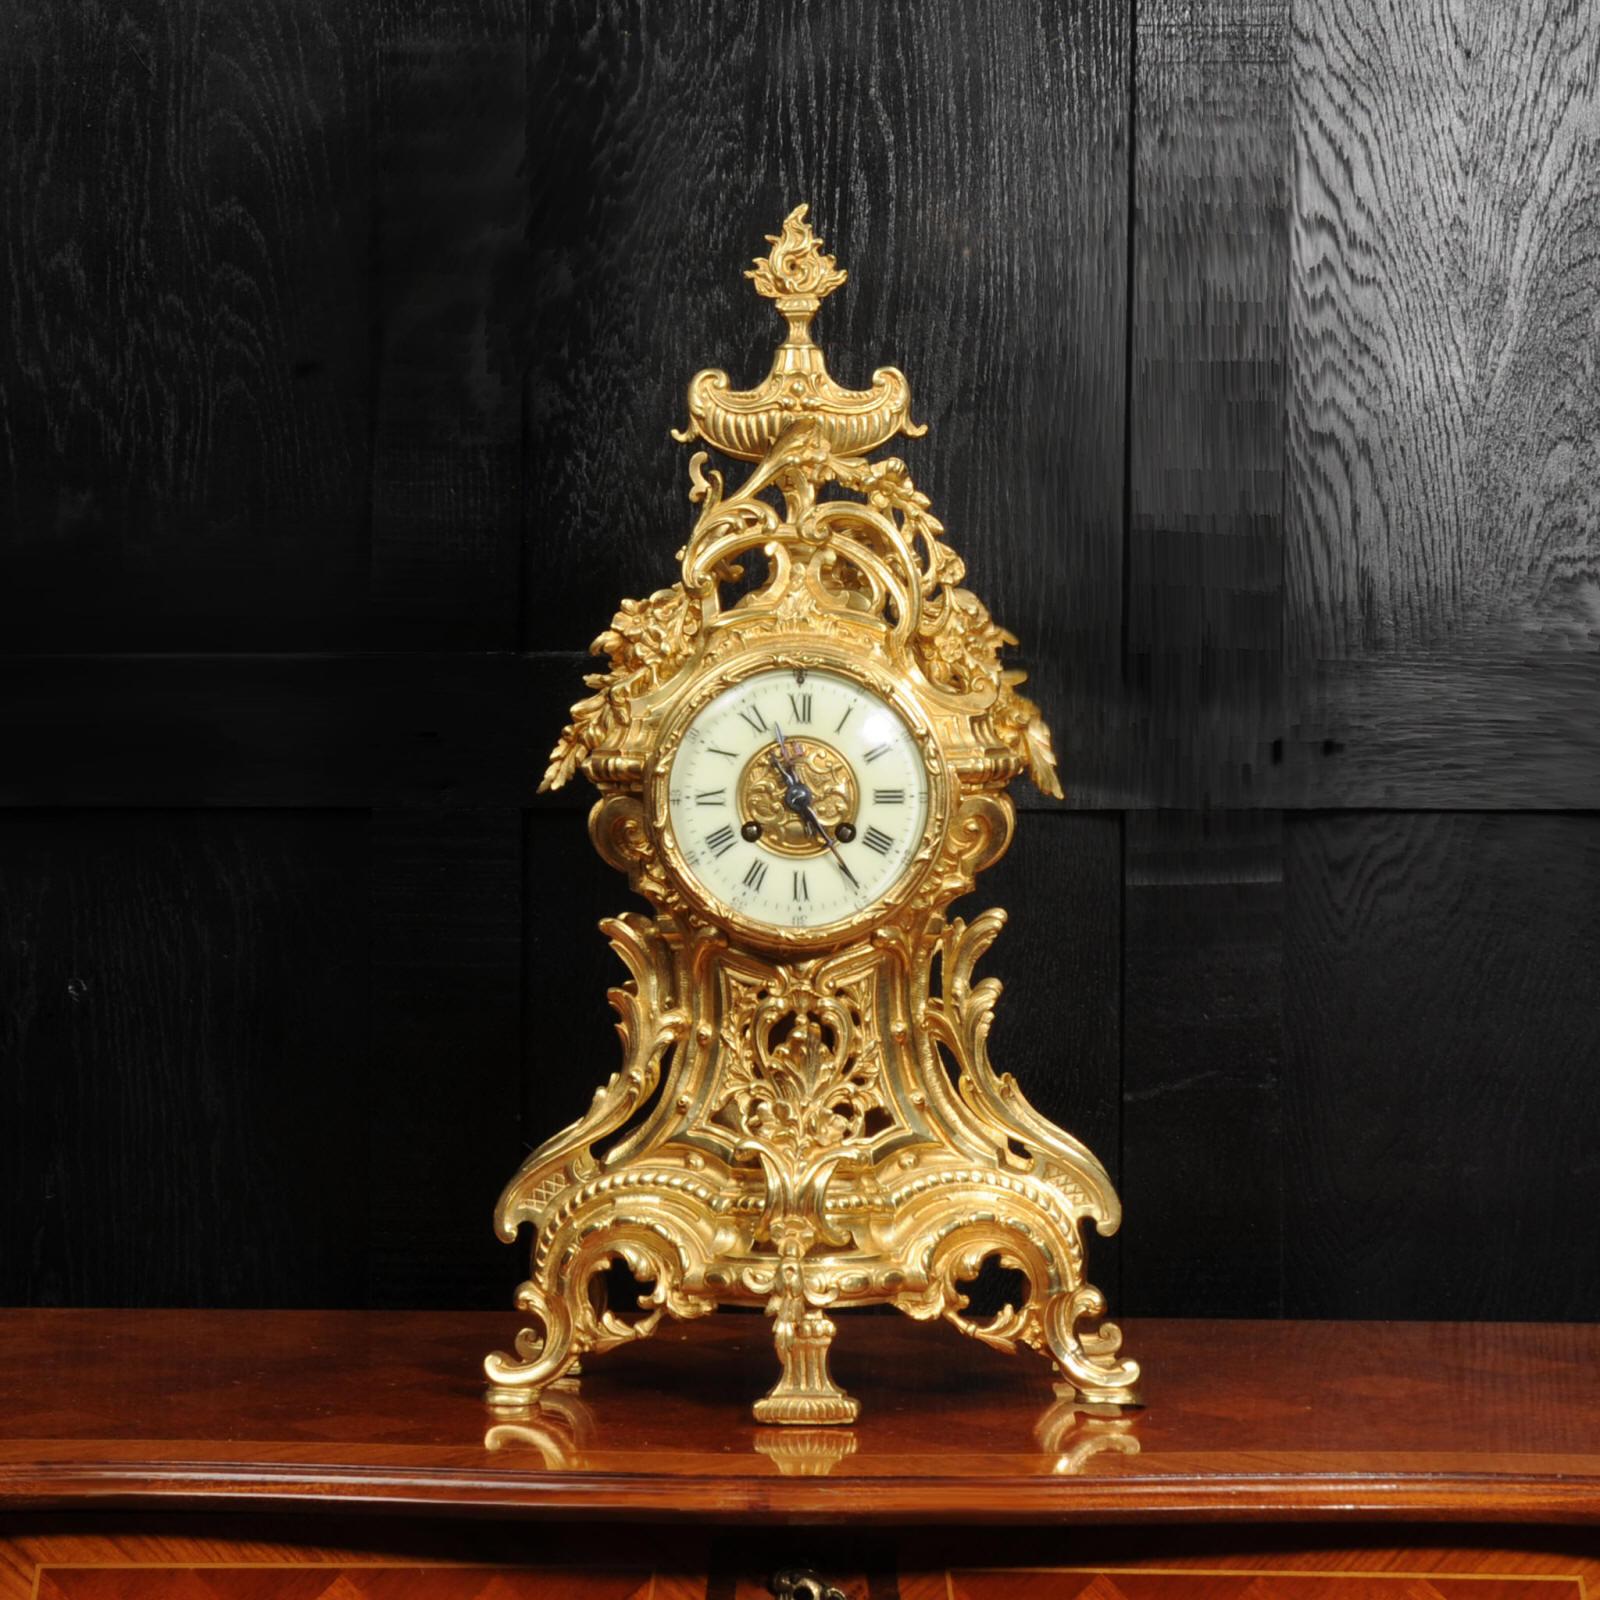 Une grande et impressionnante horloge française ancienne de Louis Japy. Il est magnifiquement réalisé en bronze doré dans le style Louis XV. Boîtier cintré avec une façade ajourée permettant d'apercevoir le pendule se balançant doucement à